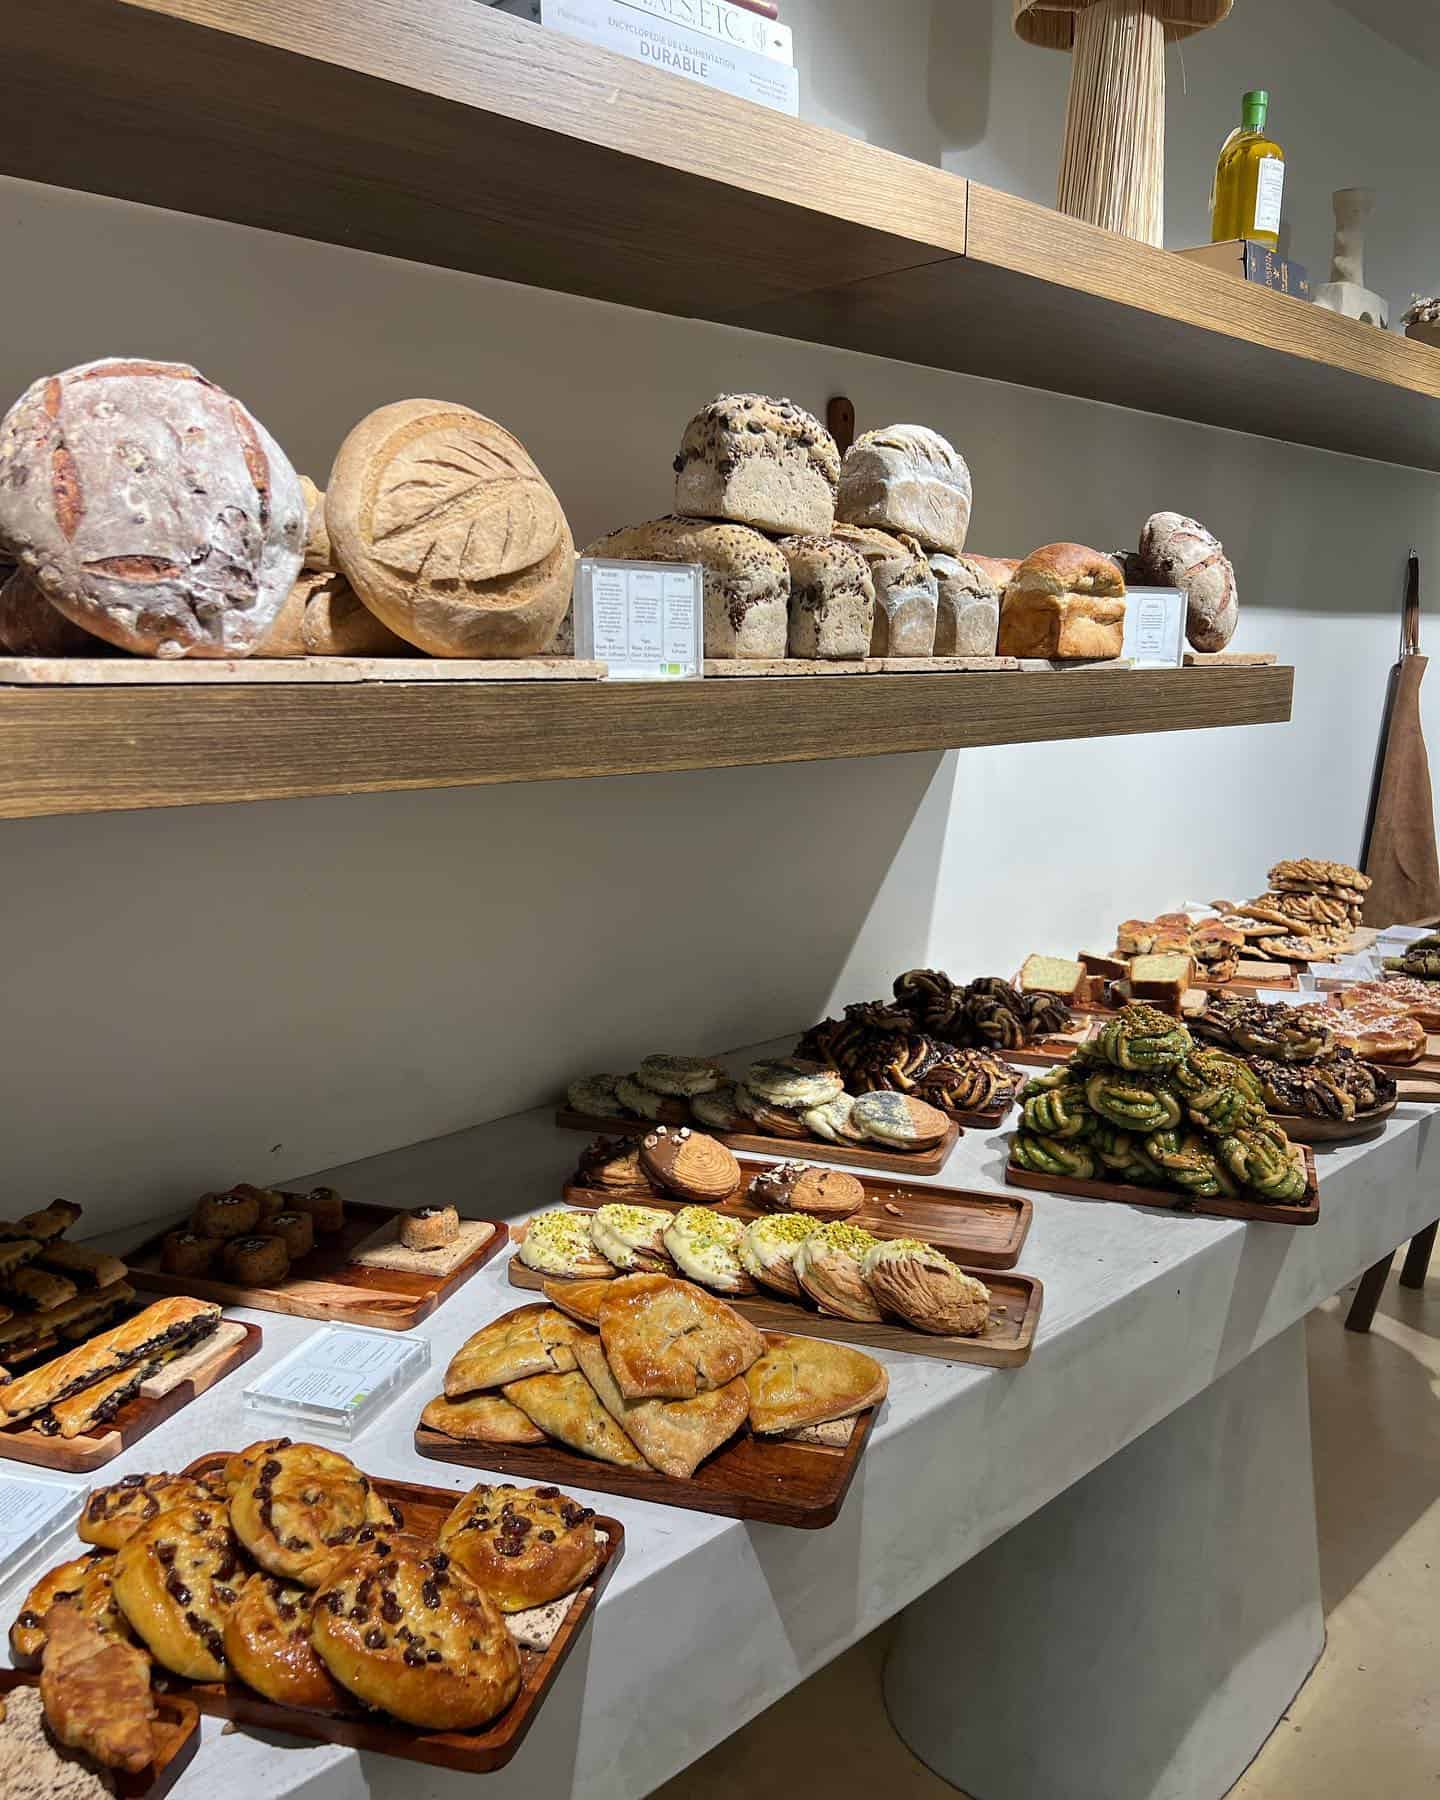 Gluten Free Bakeries in Paris worth visiting